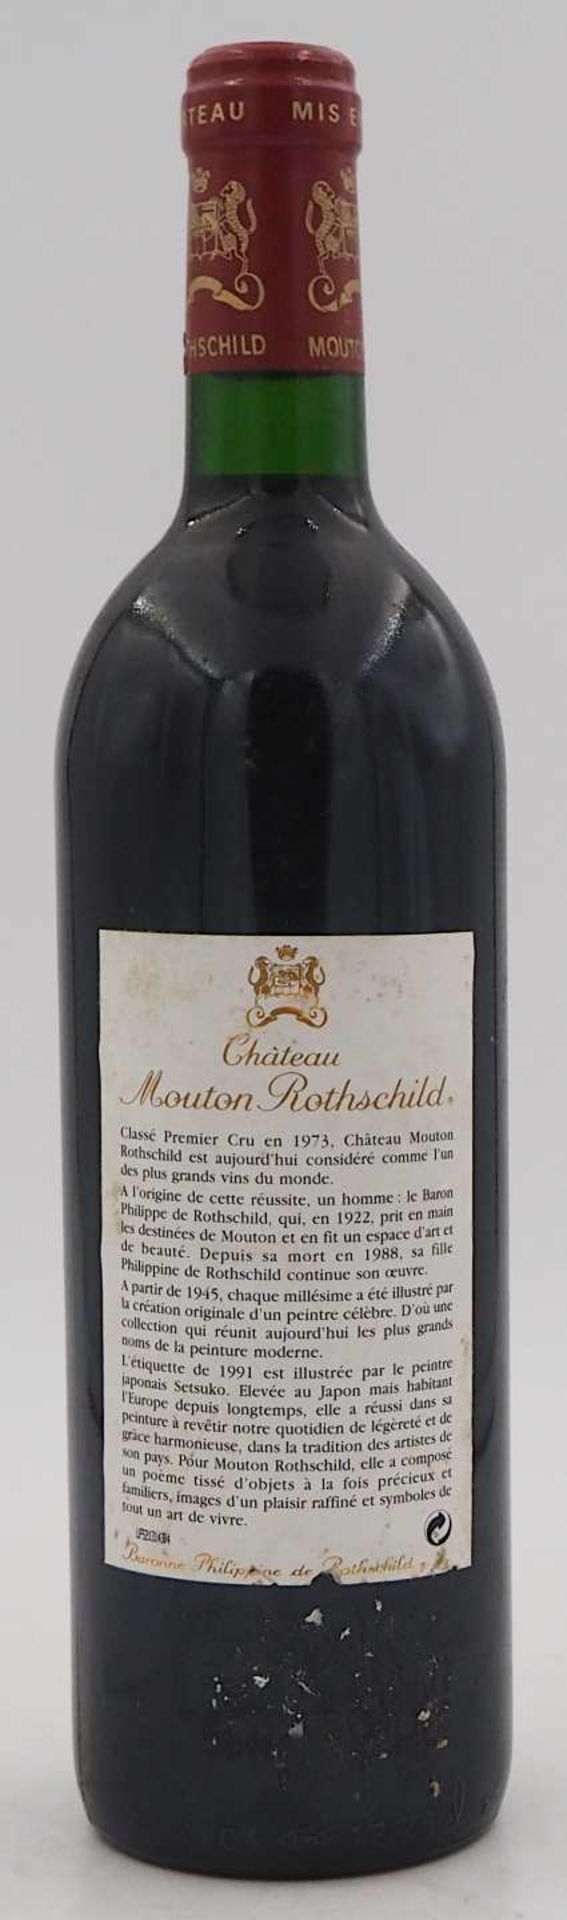 1 Flasche Chateau Mouton Rothschild Pauillac Baronne Philippine de Rothschild 1991 Eti - Bild 3 aus 4